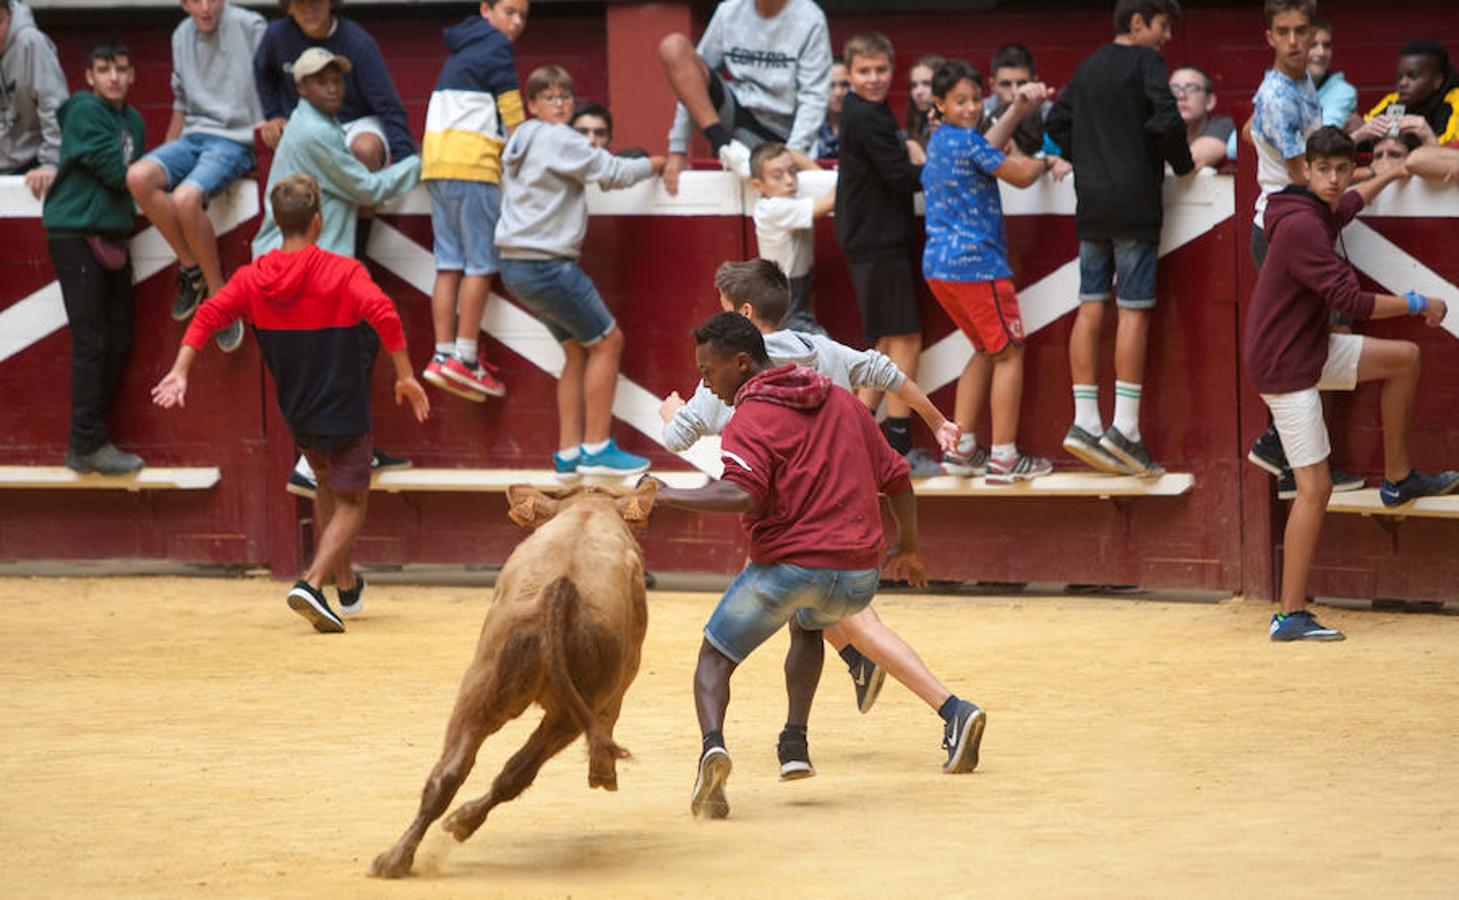 Divertido grand prix con vaquillas en La Ribera. Diversión para incondicionales desde primera hora del día.